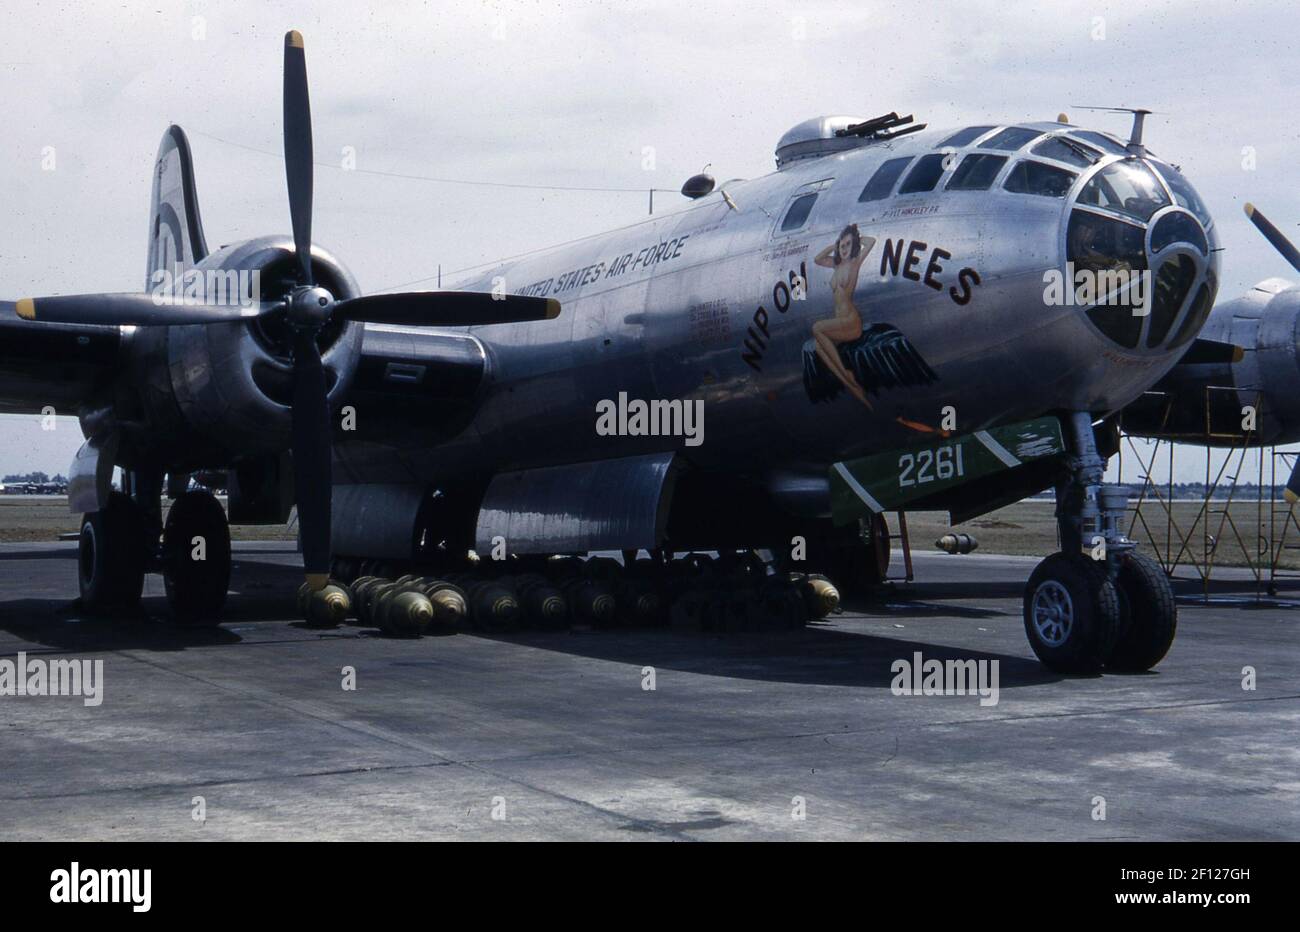 Vue de trois quarts avant droite de la Superforteresse Boeing B-29 avec des bombes sous l'avion. L'art du nez comprend un surnom avec dessin, « Nip on Nees ». Banque D'Images